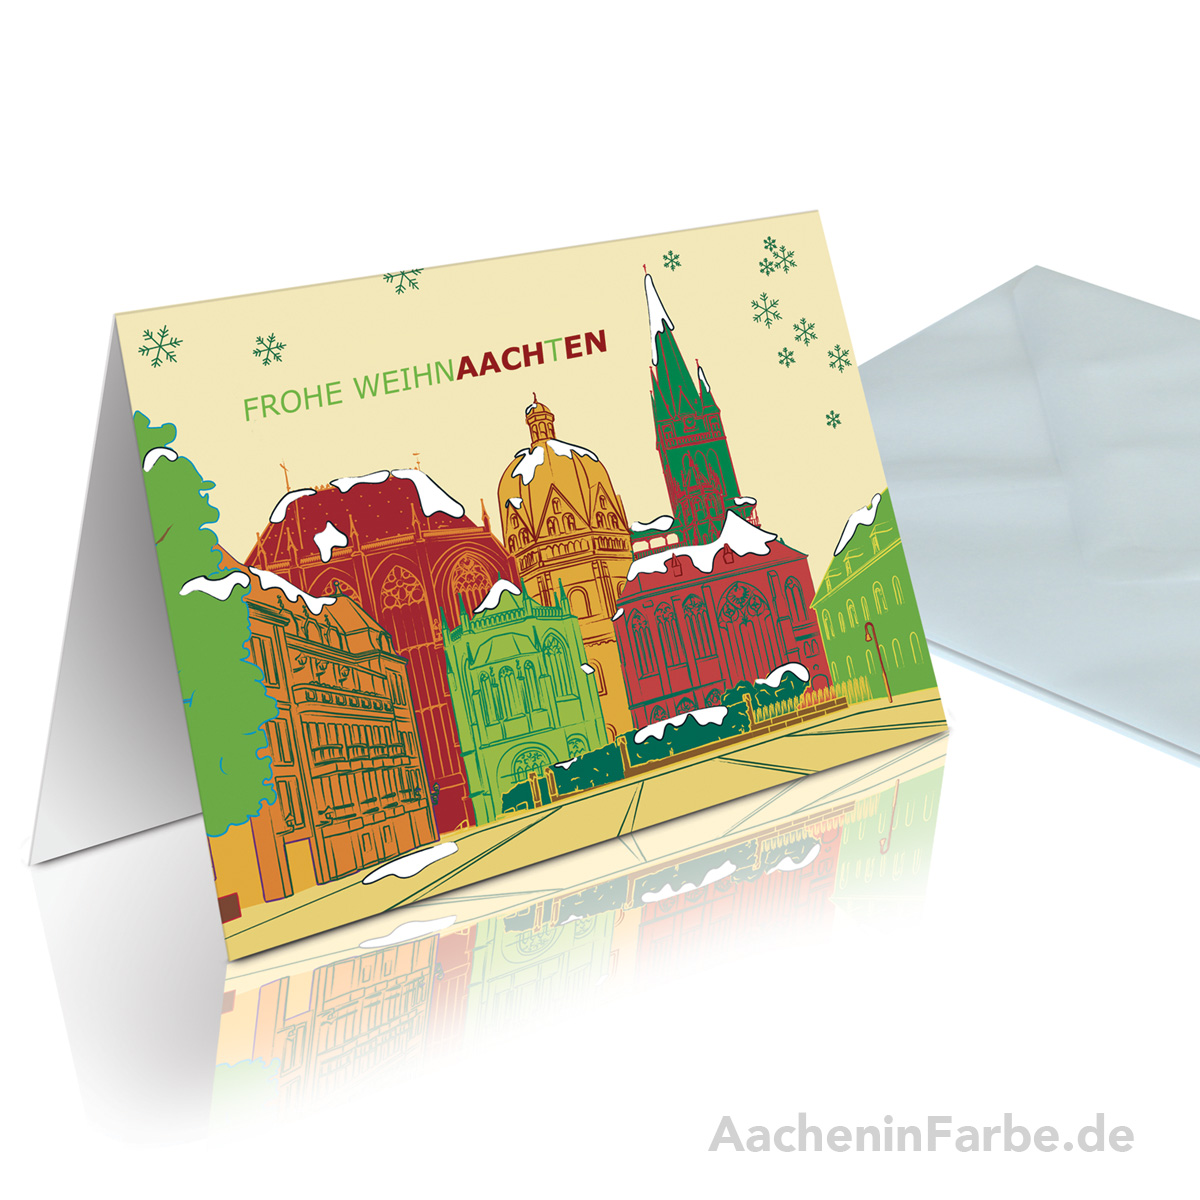 Grußkarte "Frohe WeihnAACHtEN", Aachener Dom, rot-grün